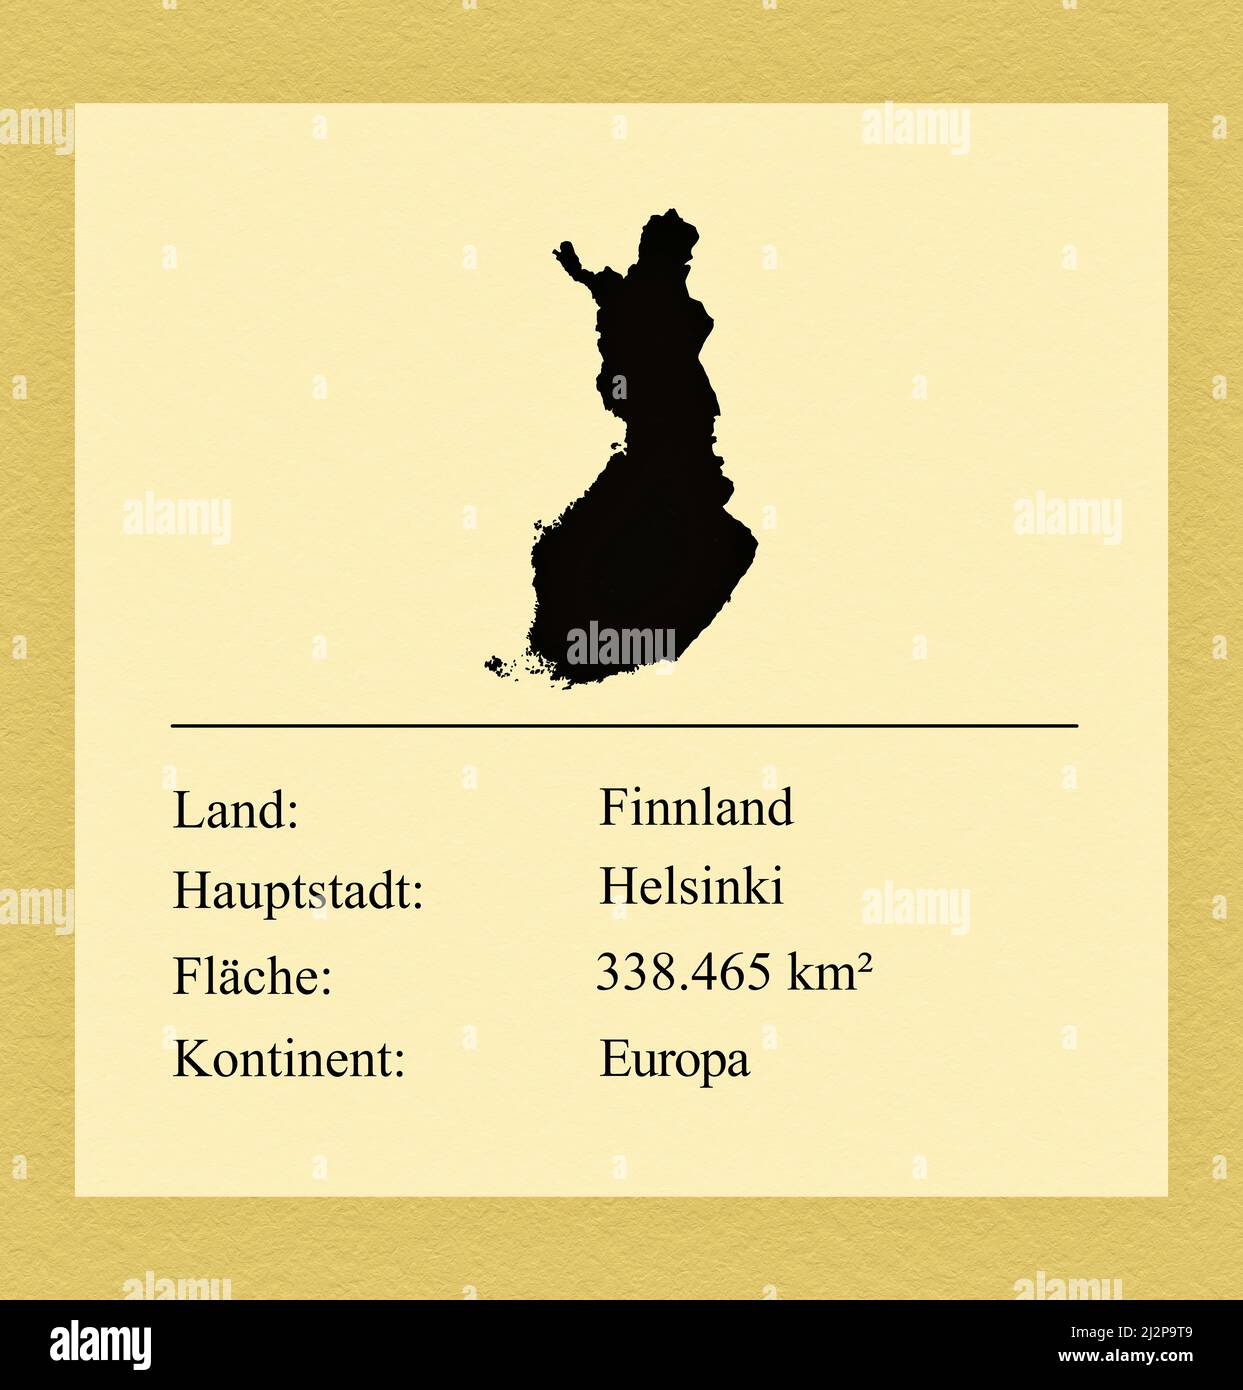 Umrisse des Landes Finnland, darunter ein kleiner Steckbrief mit Ländernamen, Hauptstadt, Fläche und Kontinent Foto Stock